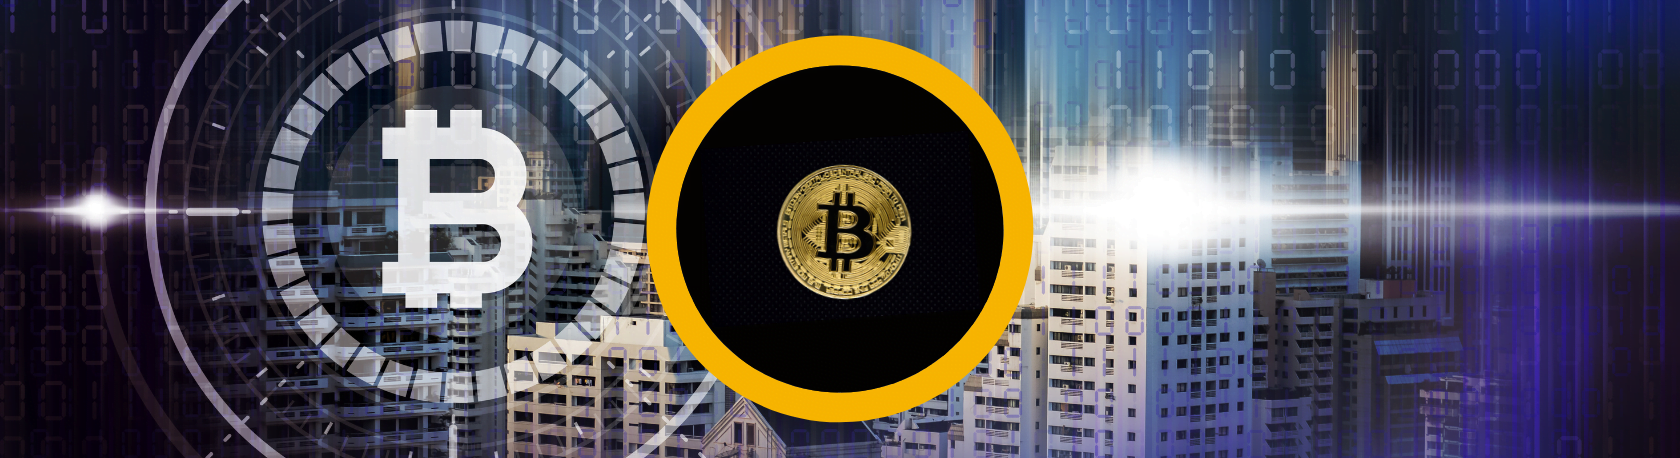 Easy Podcast: El Bitcoin, la revolución del siglo XXI - Easy Español